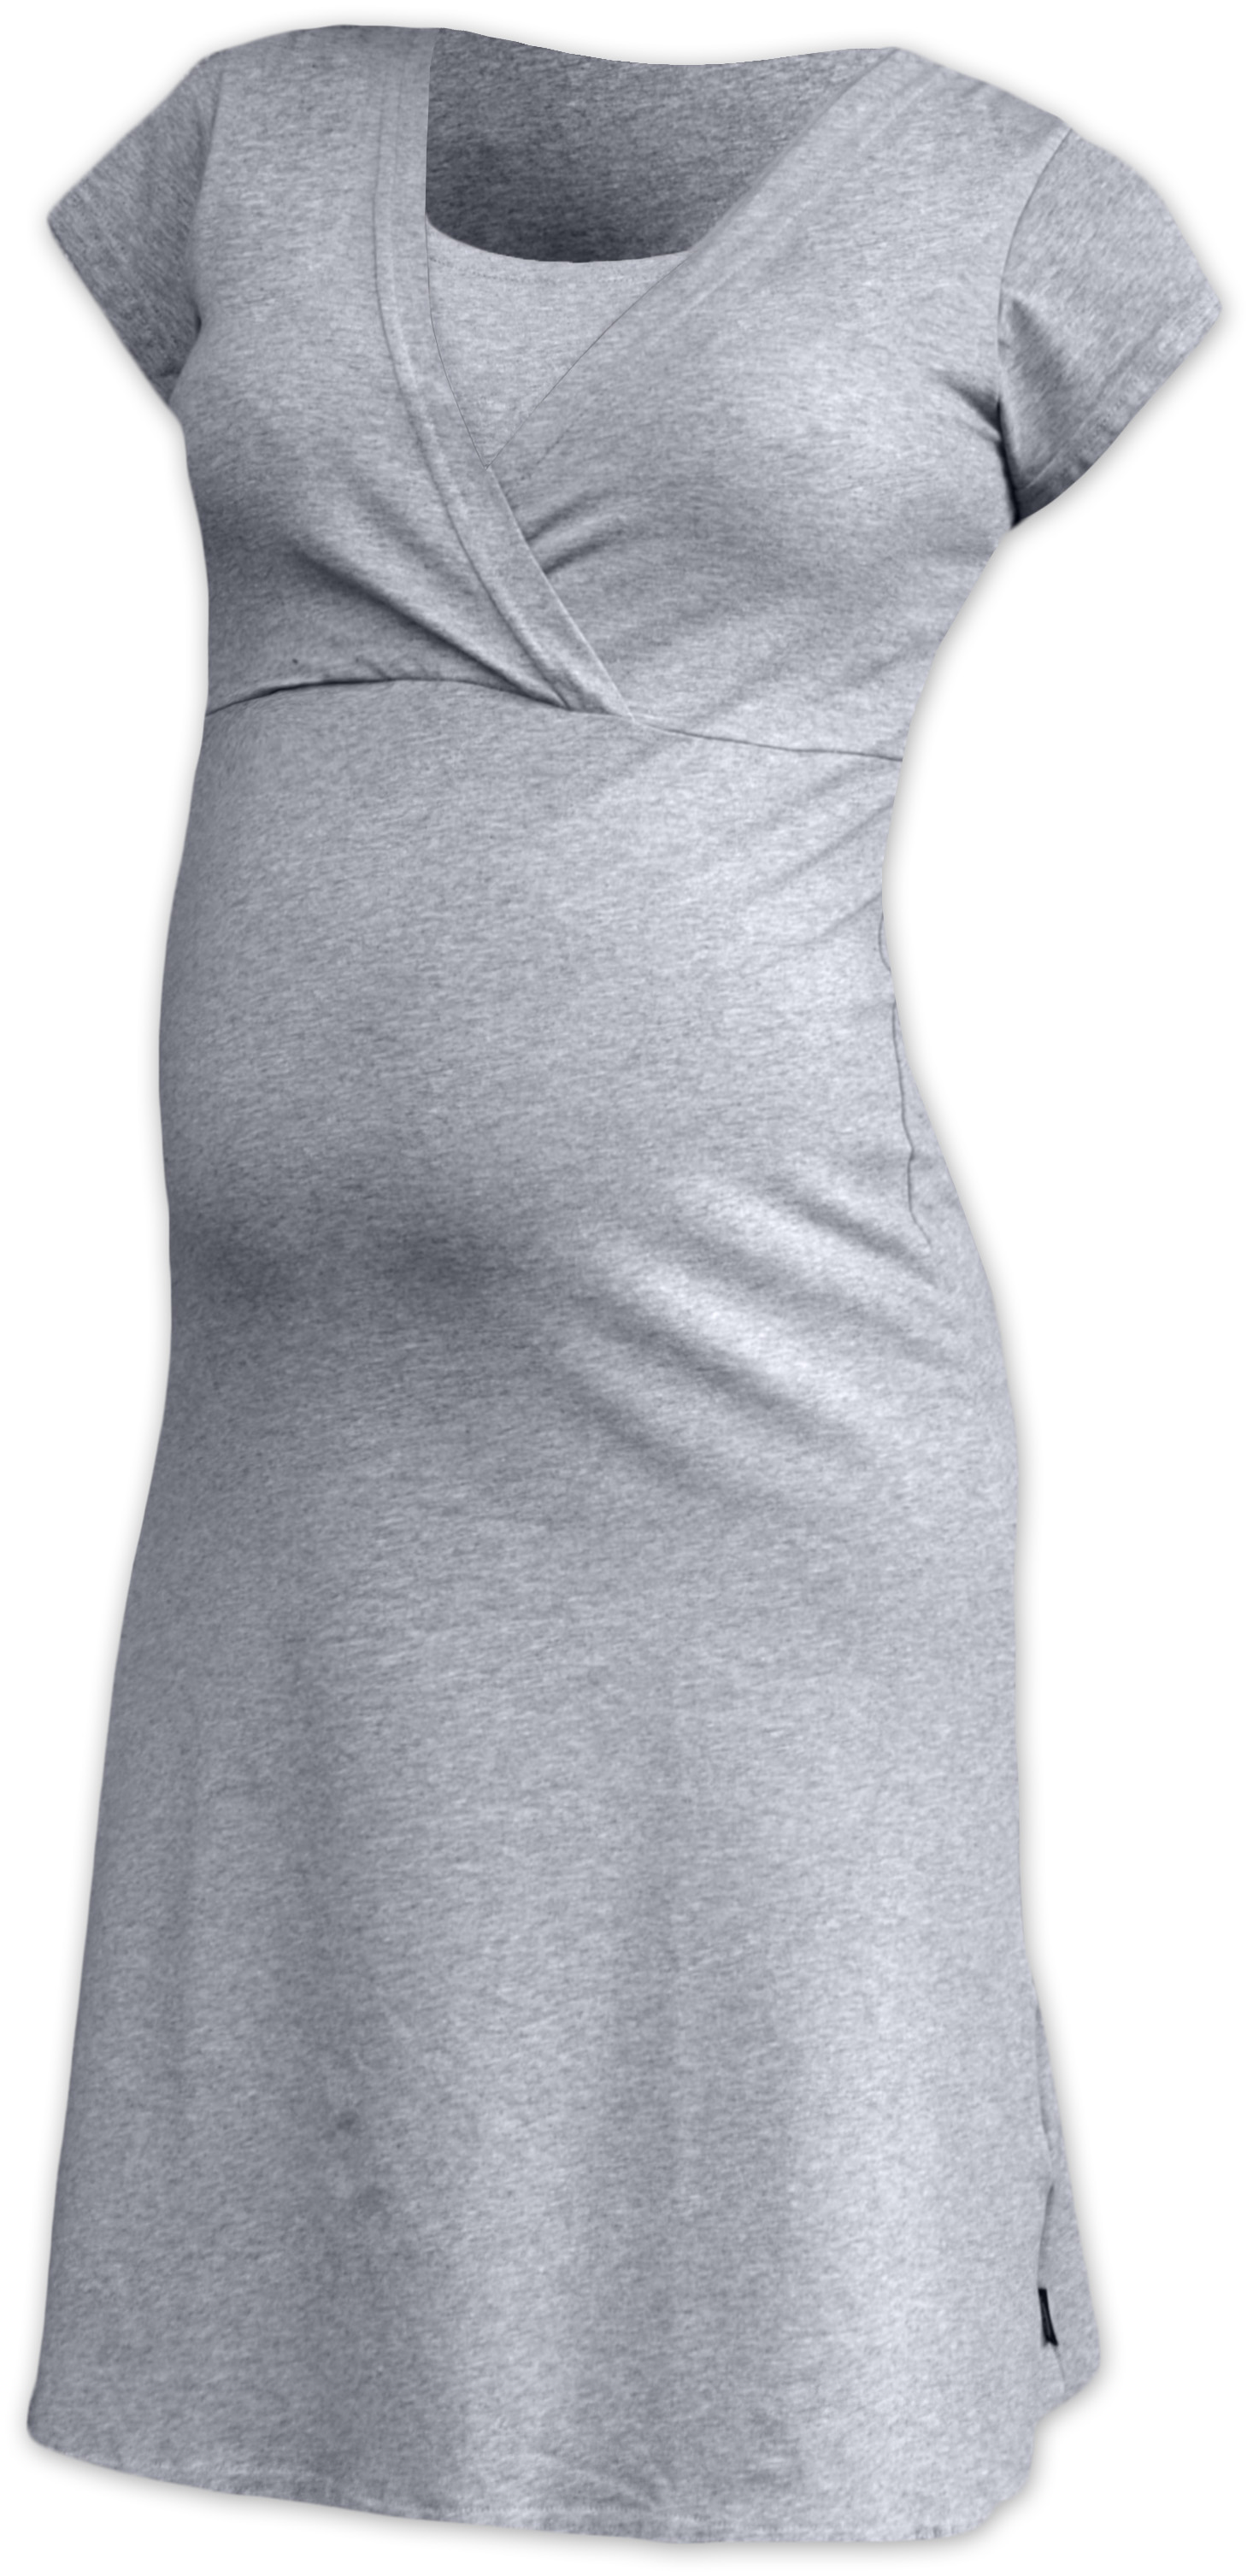 Nočná košeľa na dojčenie Eva, krátky rukáv, sivý melír